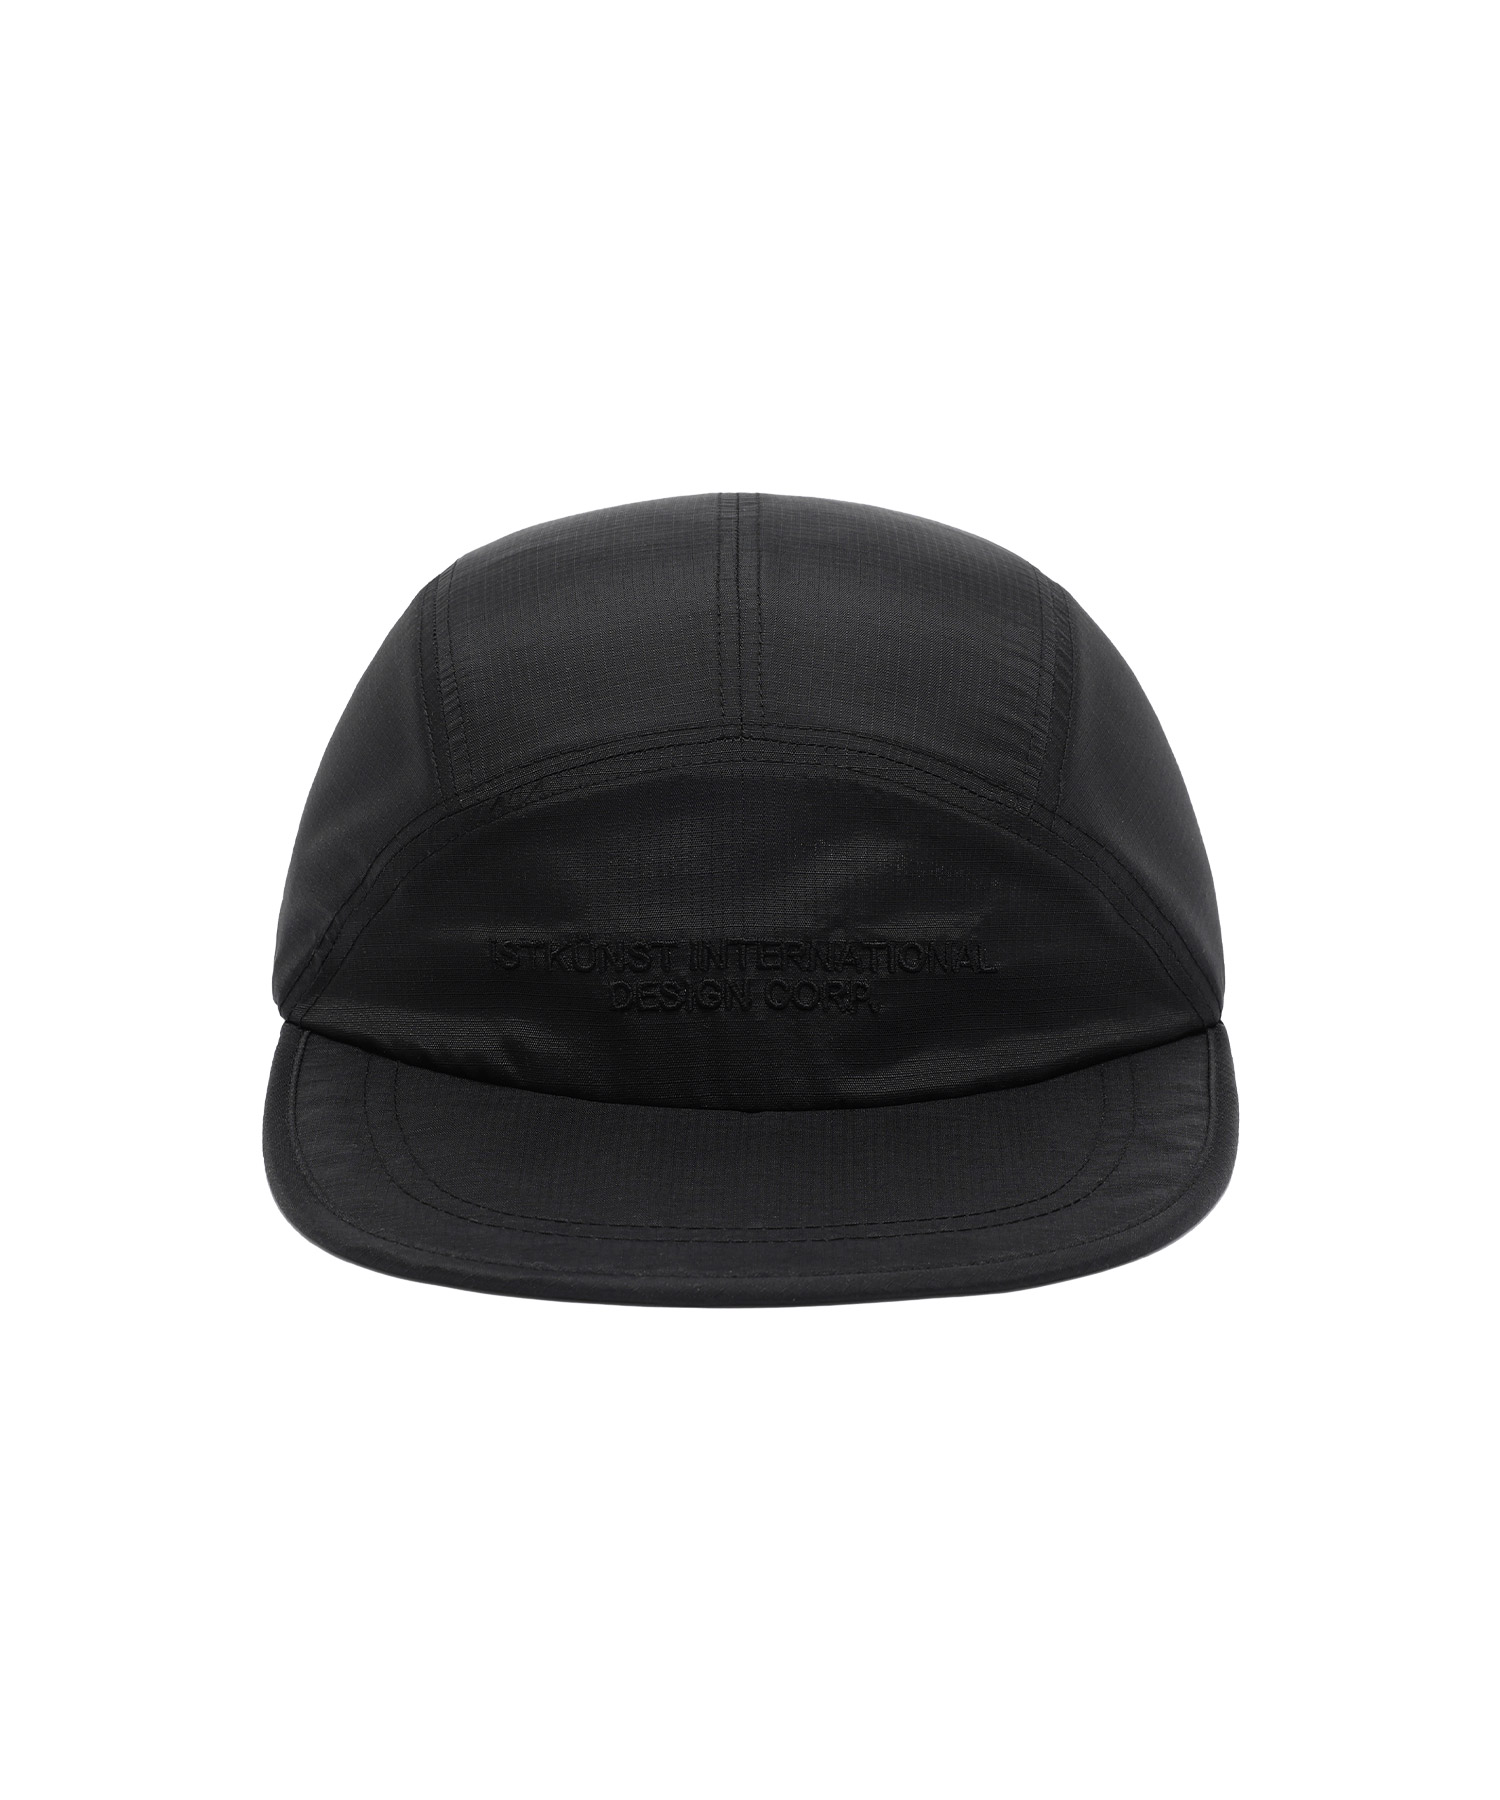 RIPSTOP CAMP CAP[BLACK]